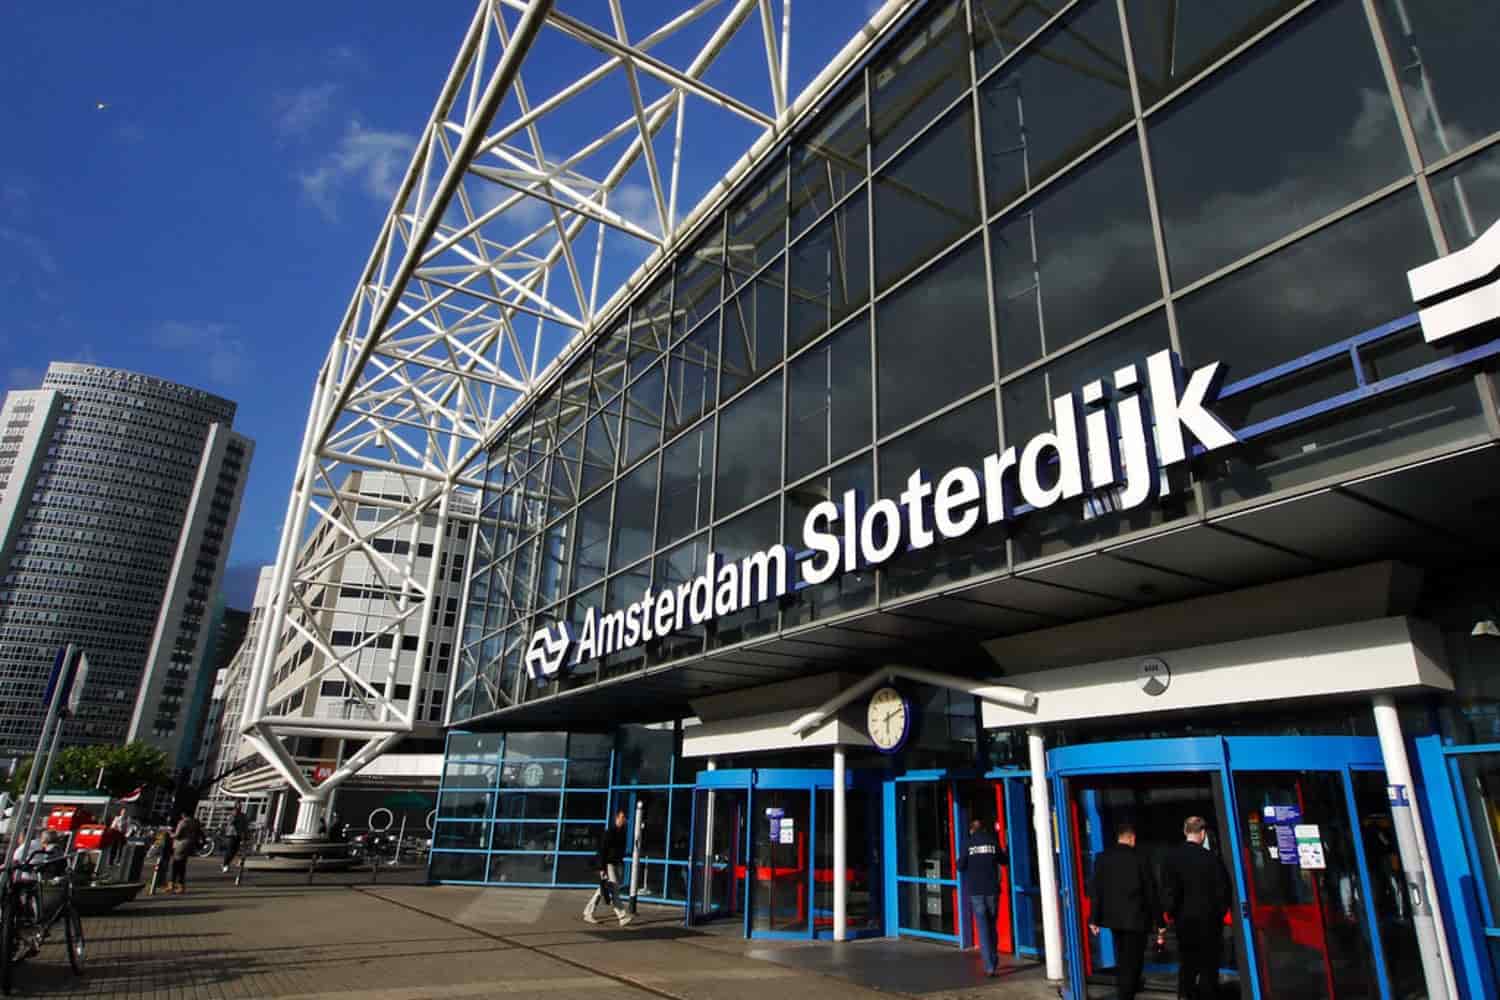 Ámsterdam Sloterdijk Station: ubicación, cómo llegar y salidas